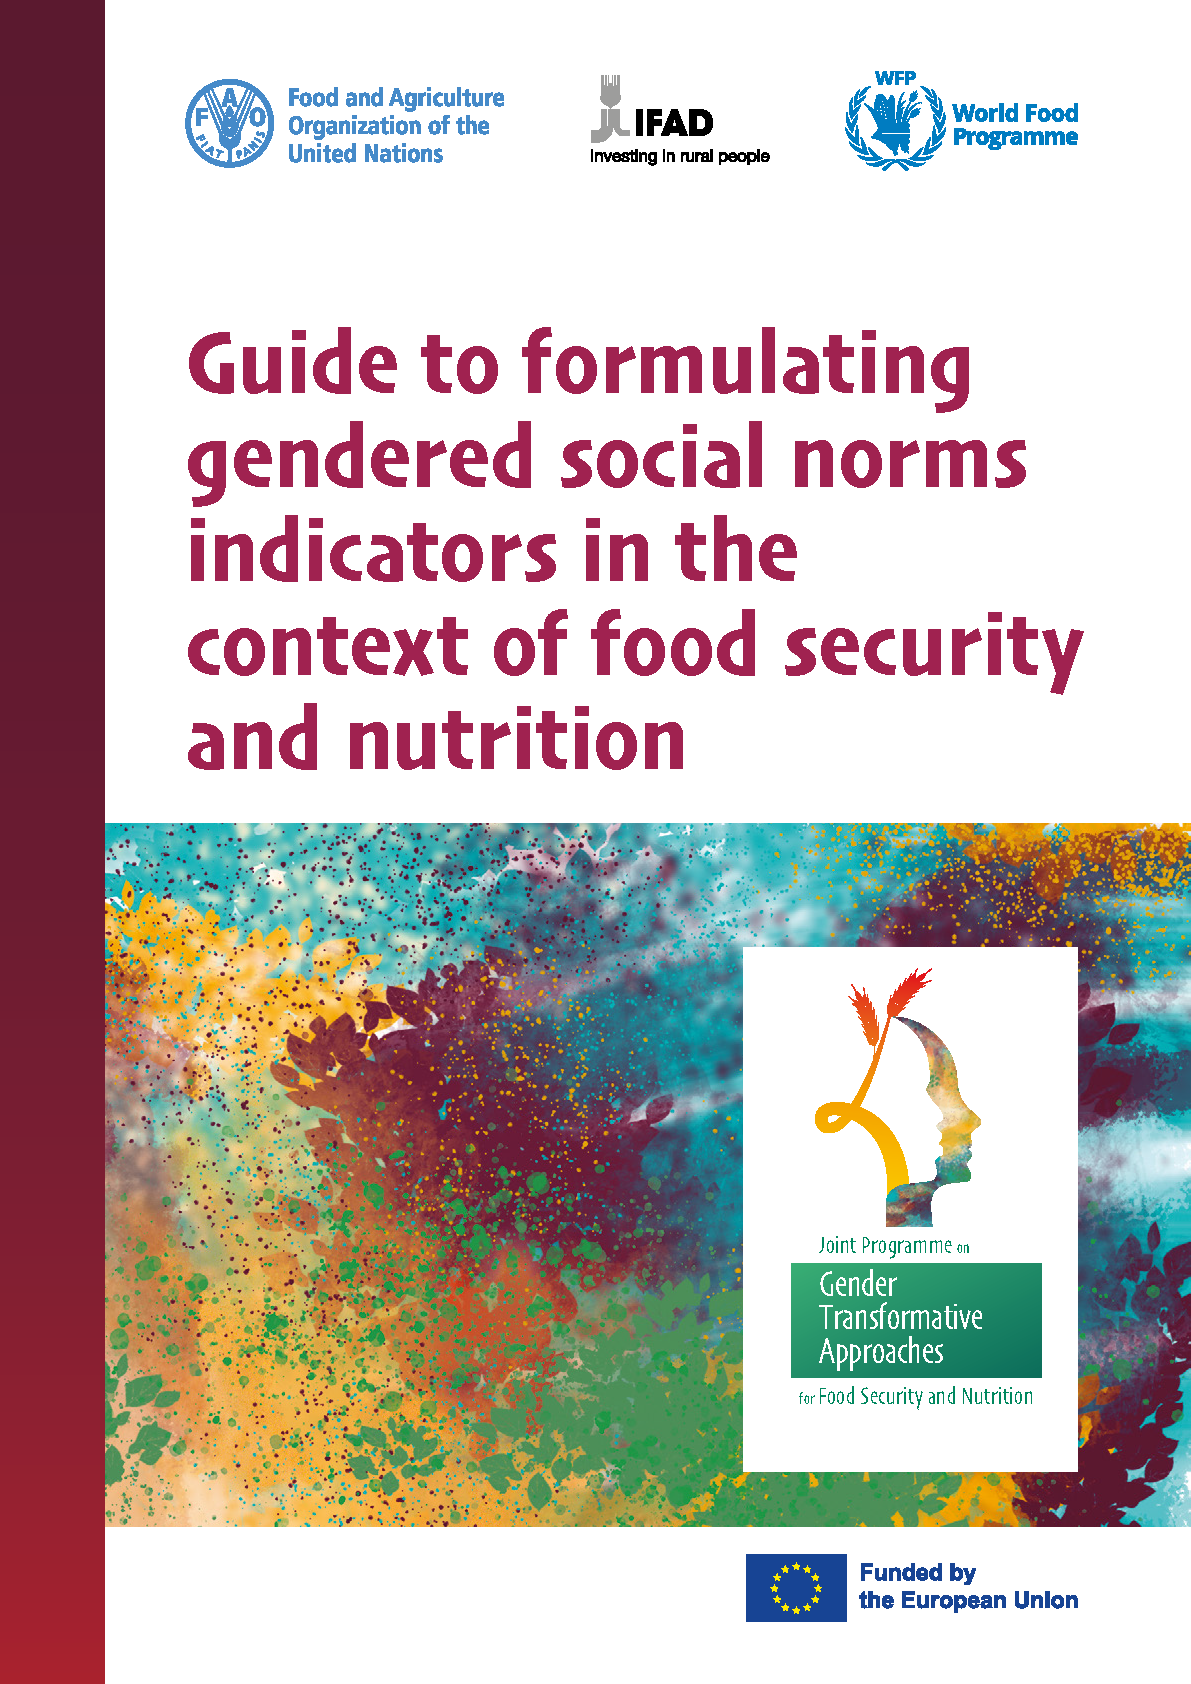 Page de couverture du Guide de formulation d'indicateurs de normes sociales sexospécifiques dans le contexte de la sécurité alimentaire et de la nutrition